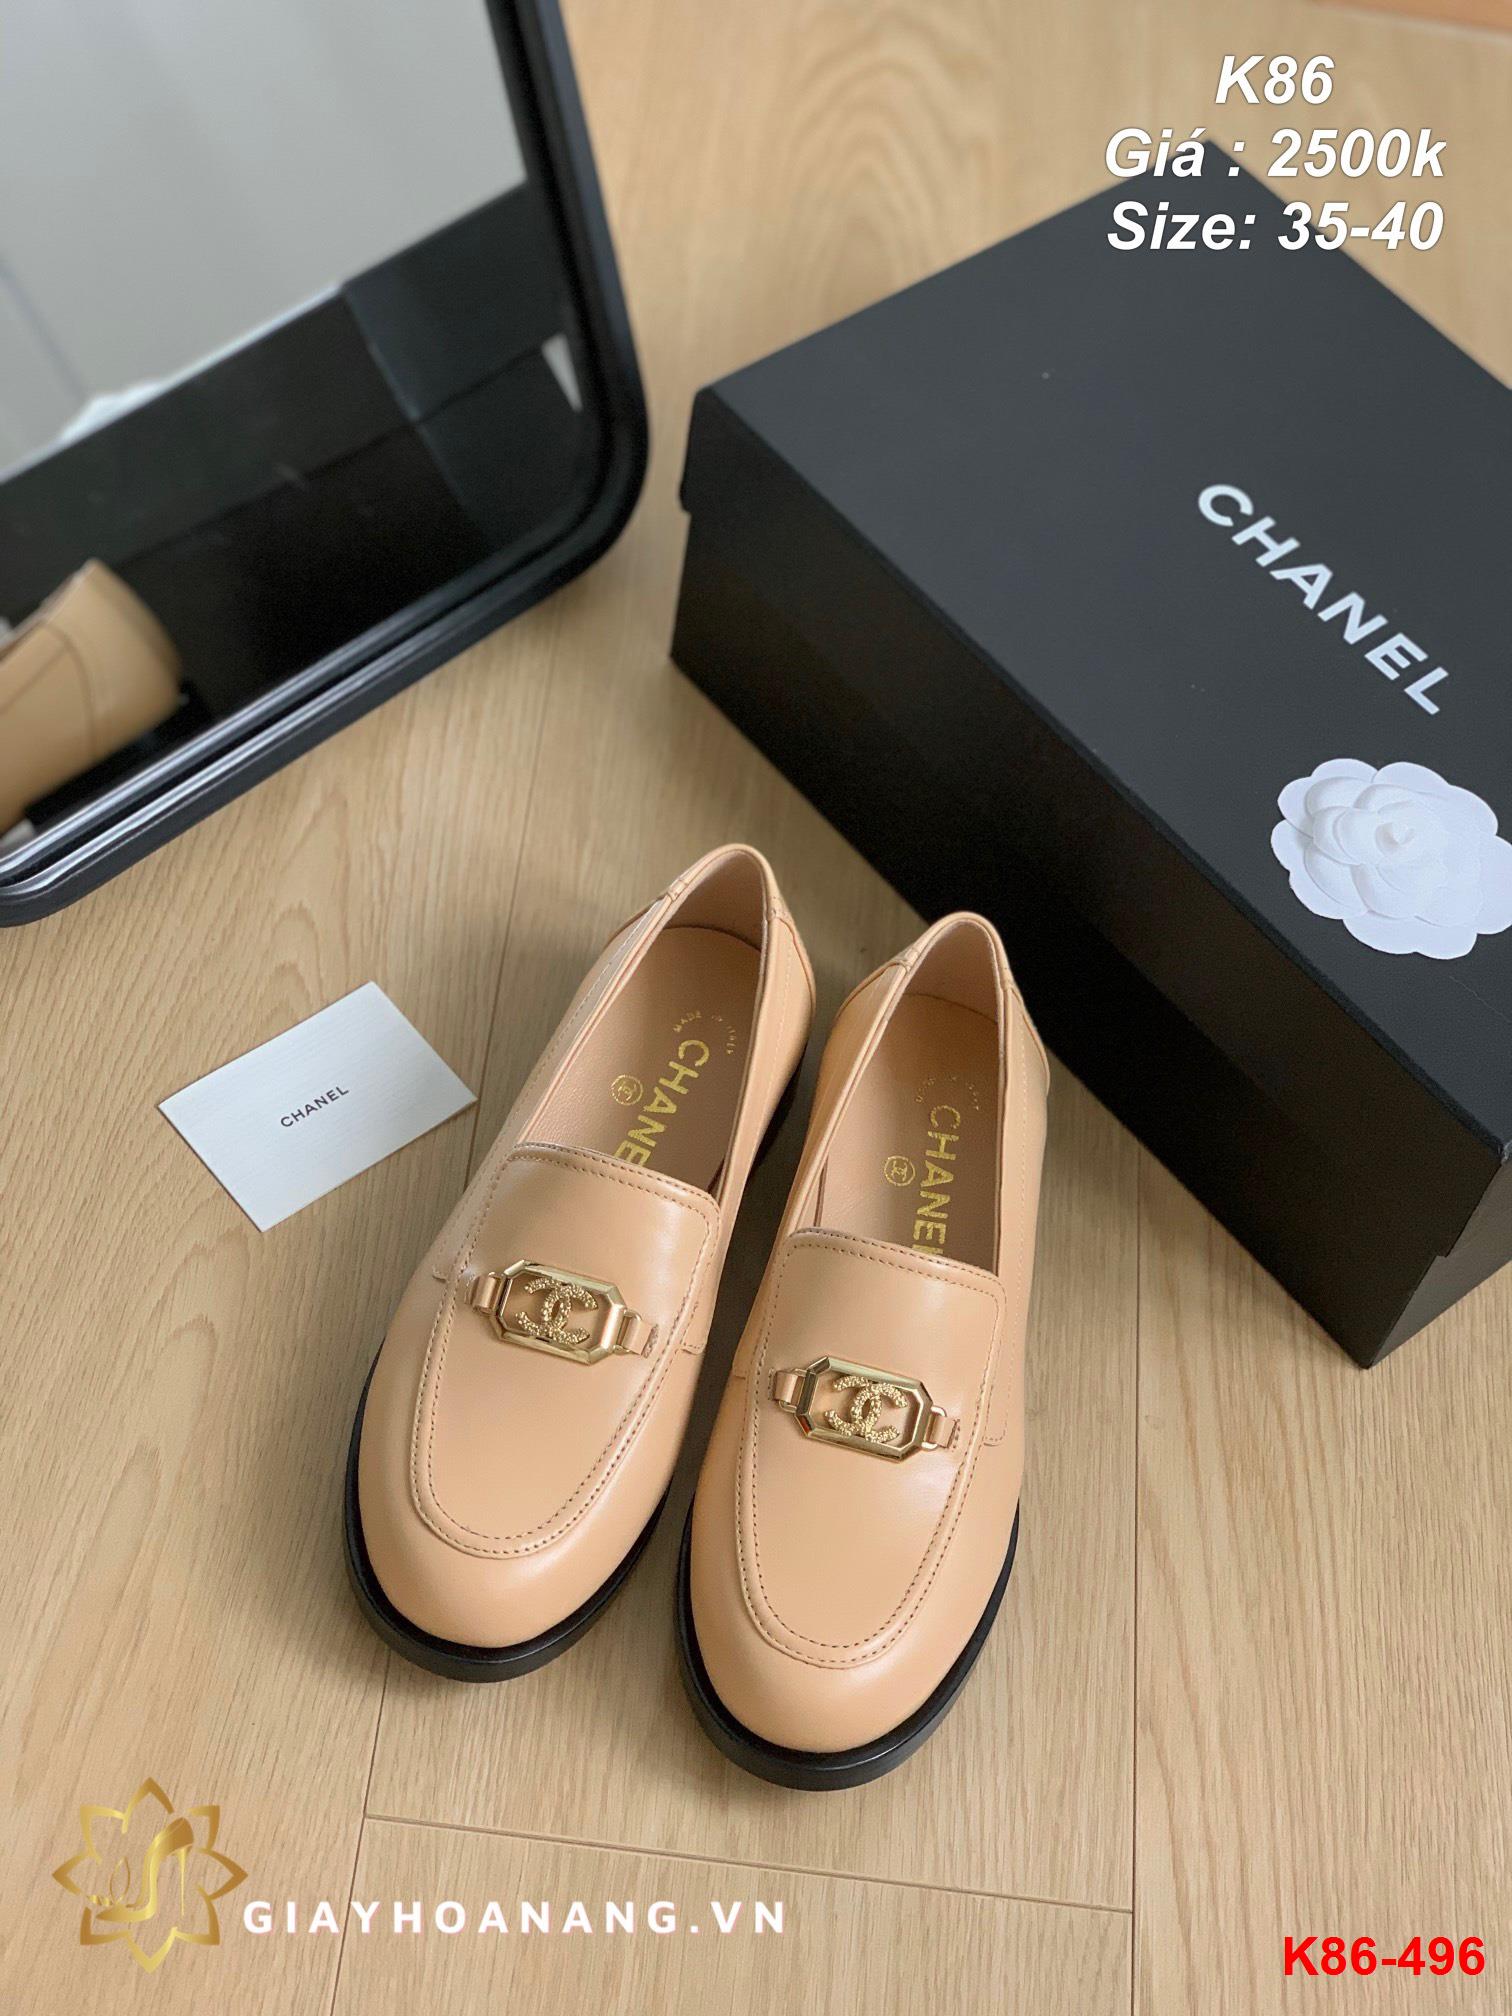 K86-496 Chanel giày lười siêu cấp